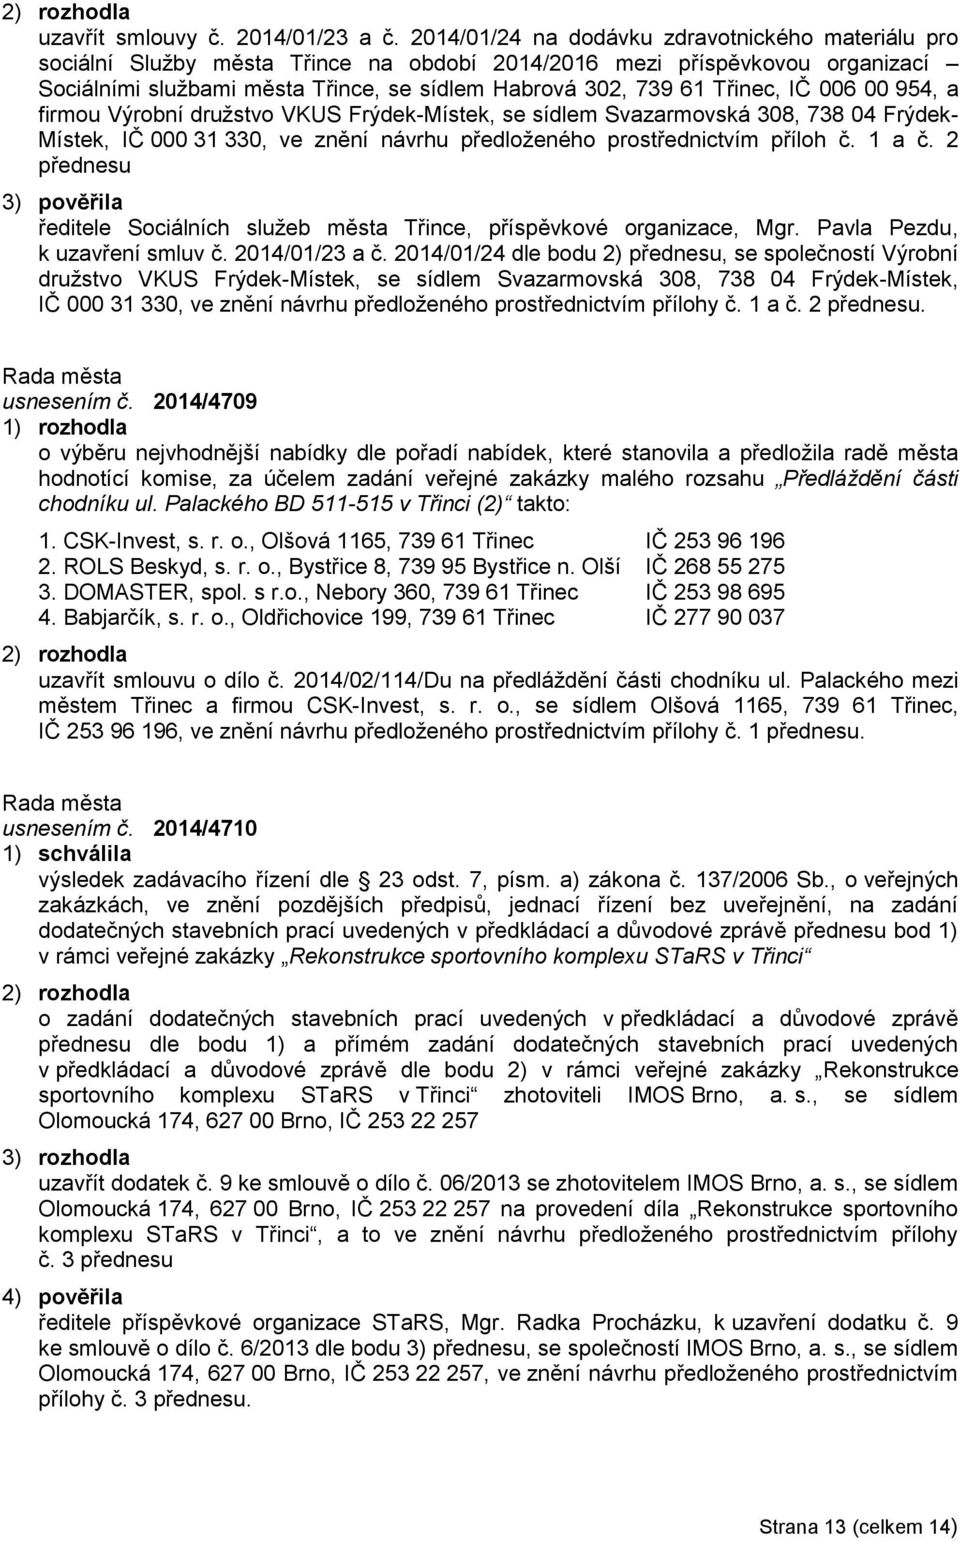 Třinec, IČ 006 00 954, a firmou Výrobní družstvo VKUS Frýdek-Místek, se sídlem Svazarmovská 308, 738 04 Frýdek- Místek, IČ 000 31 330, ve znění návrhu předloženého prostřednictvím příloh č. 1 a č.